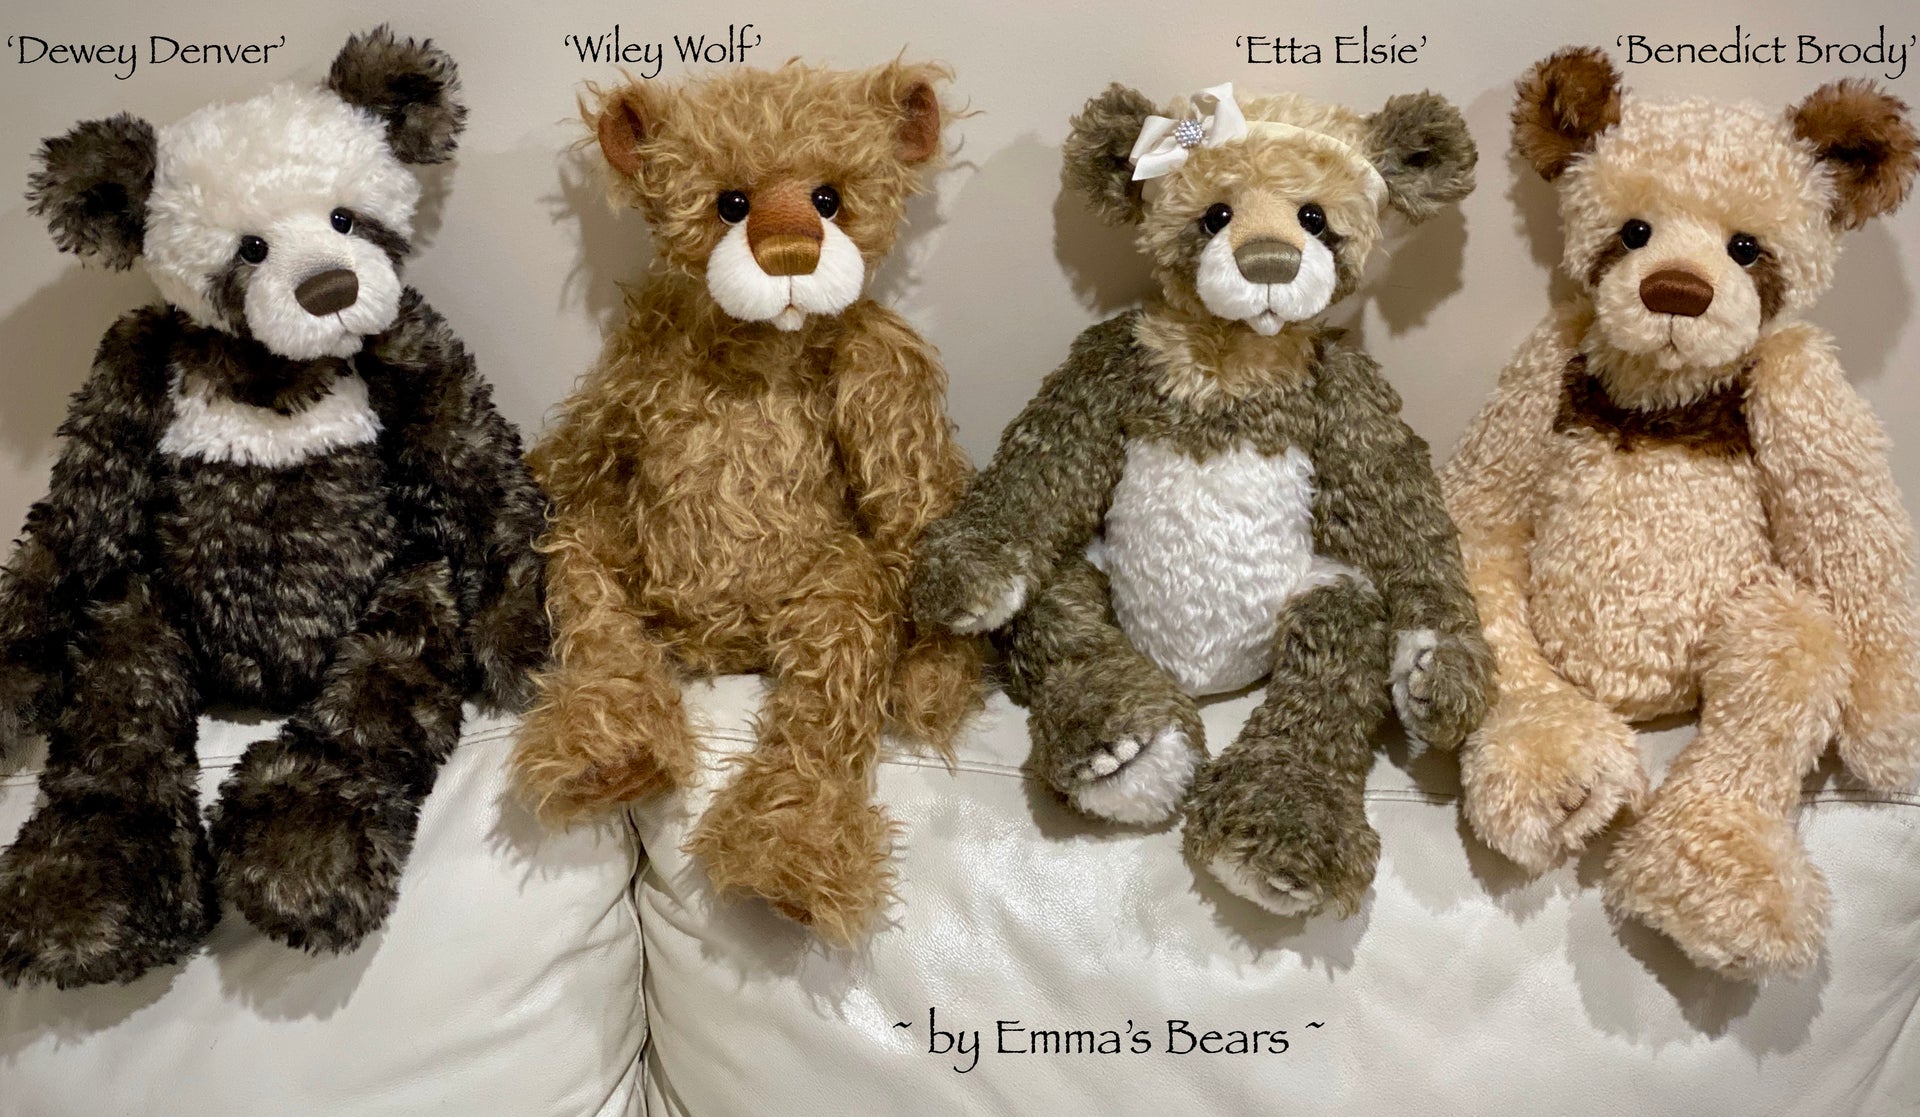 Etta Elsie - 21" Mohair Toddler Artist Bear by Emma's Bears - OOAK